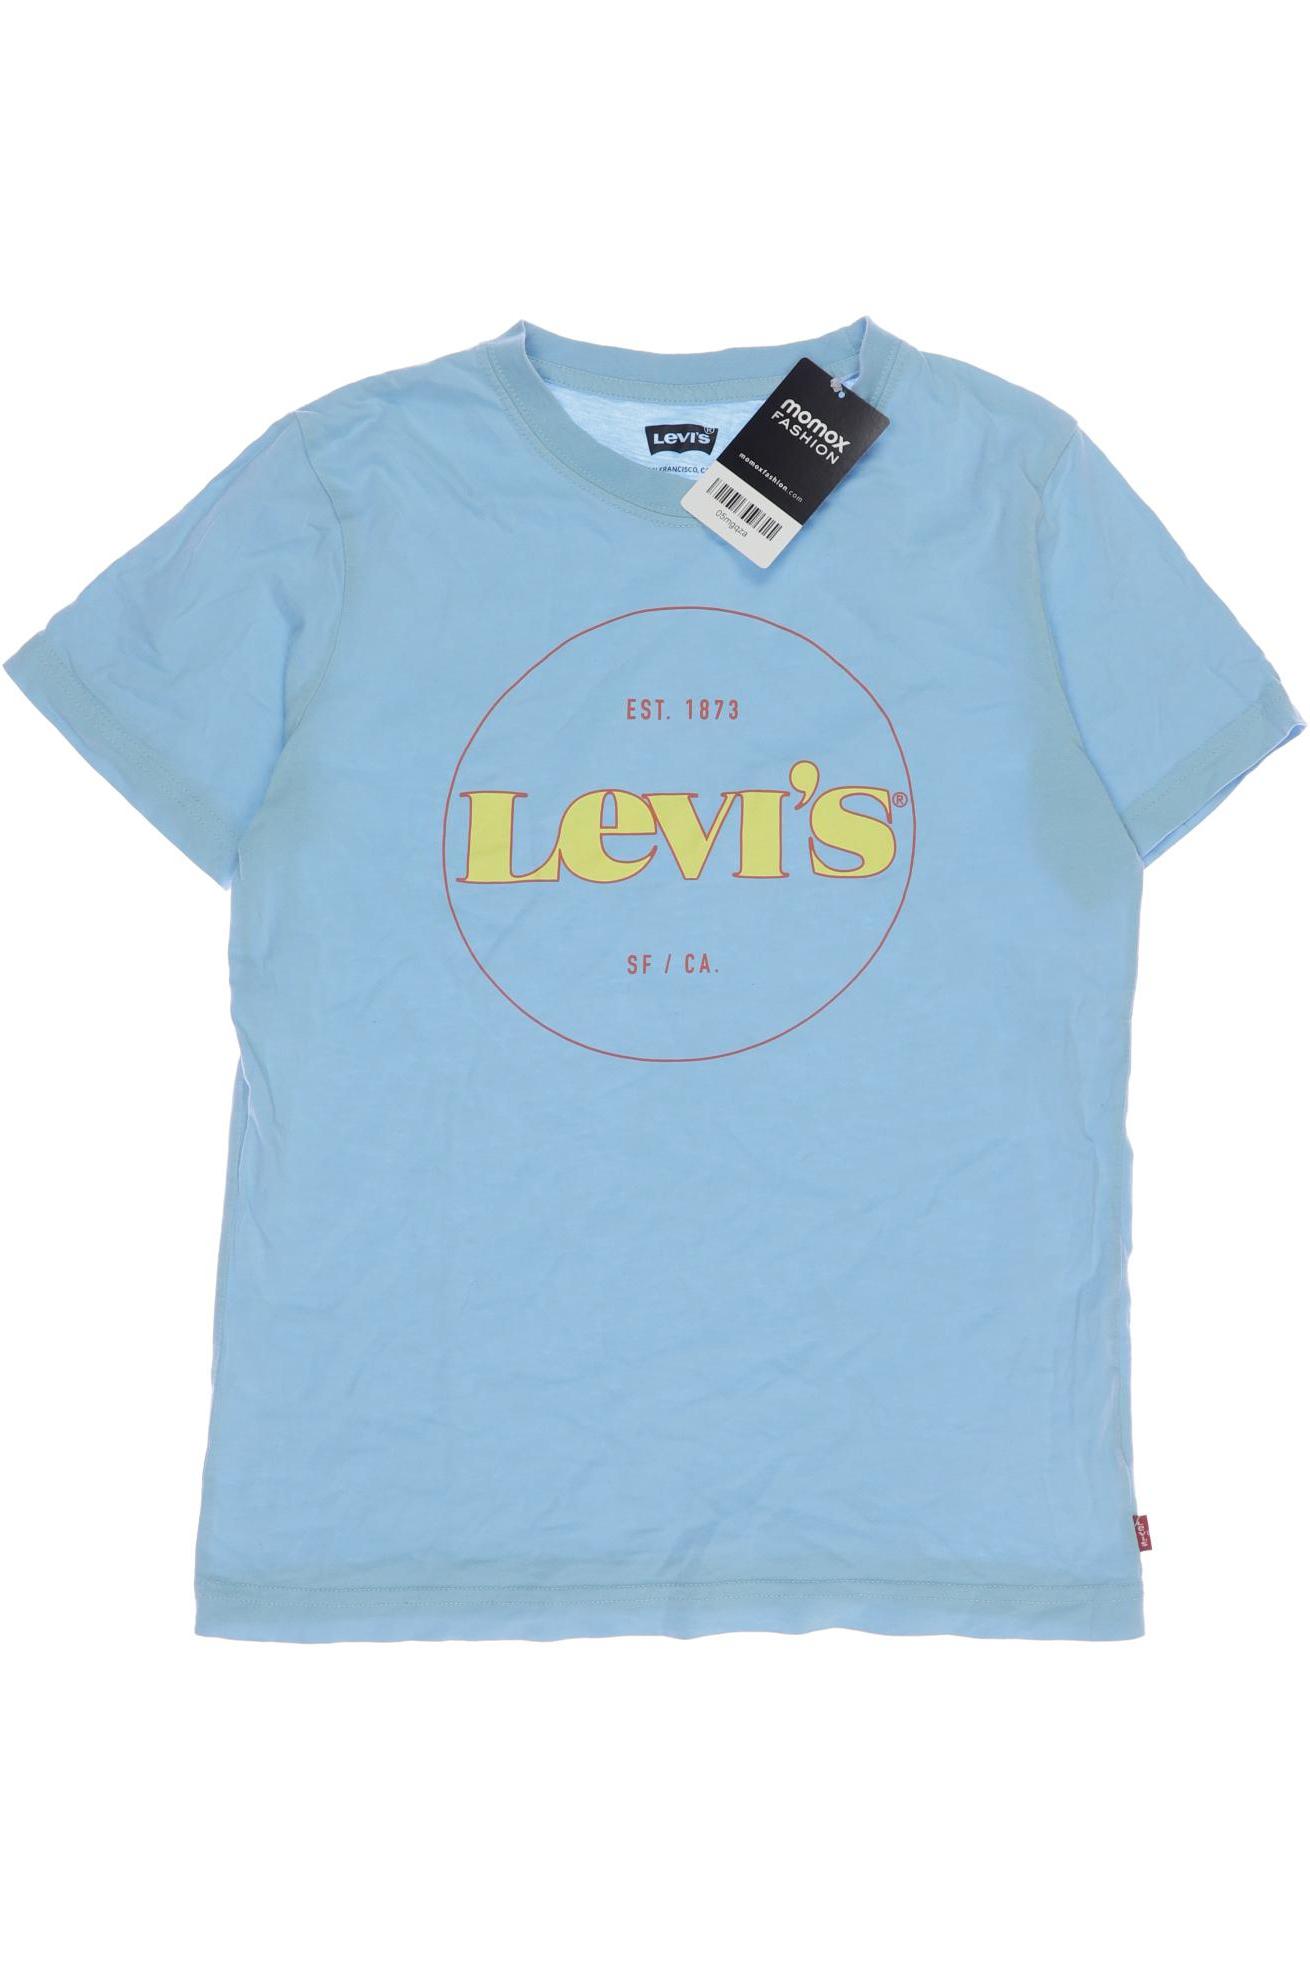 Levis Herren T-Shirt, blau, Gr. 152 von Levis